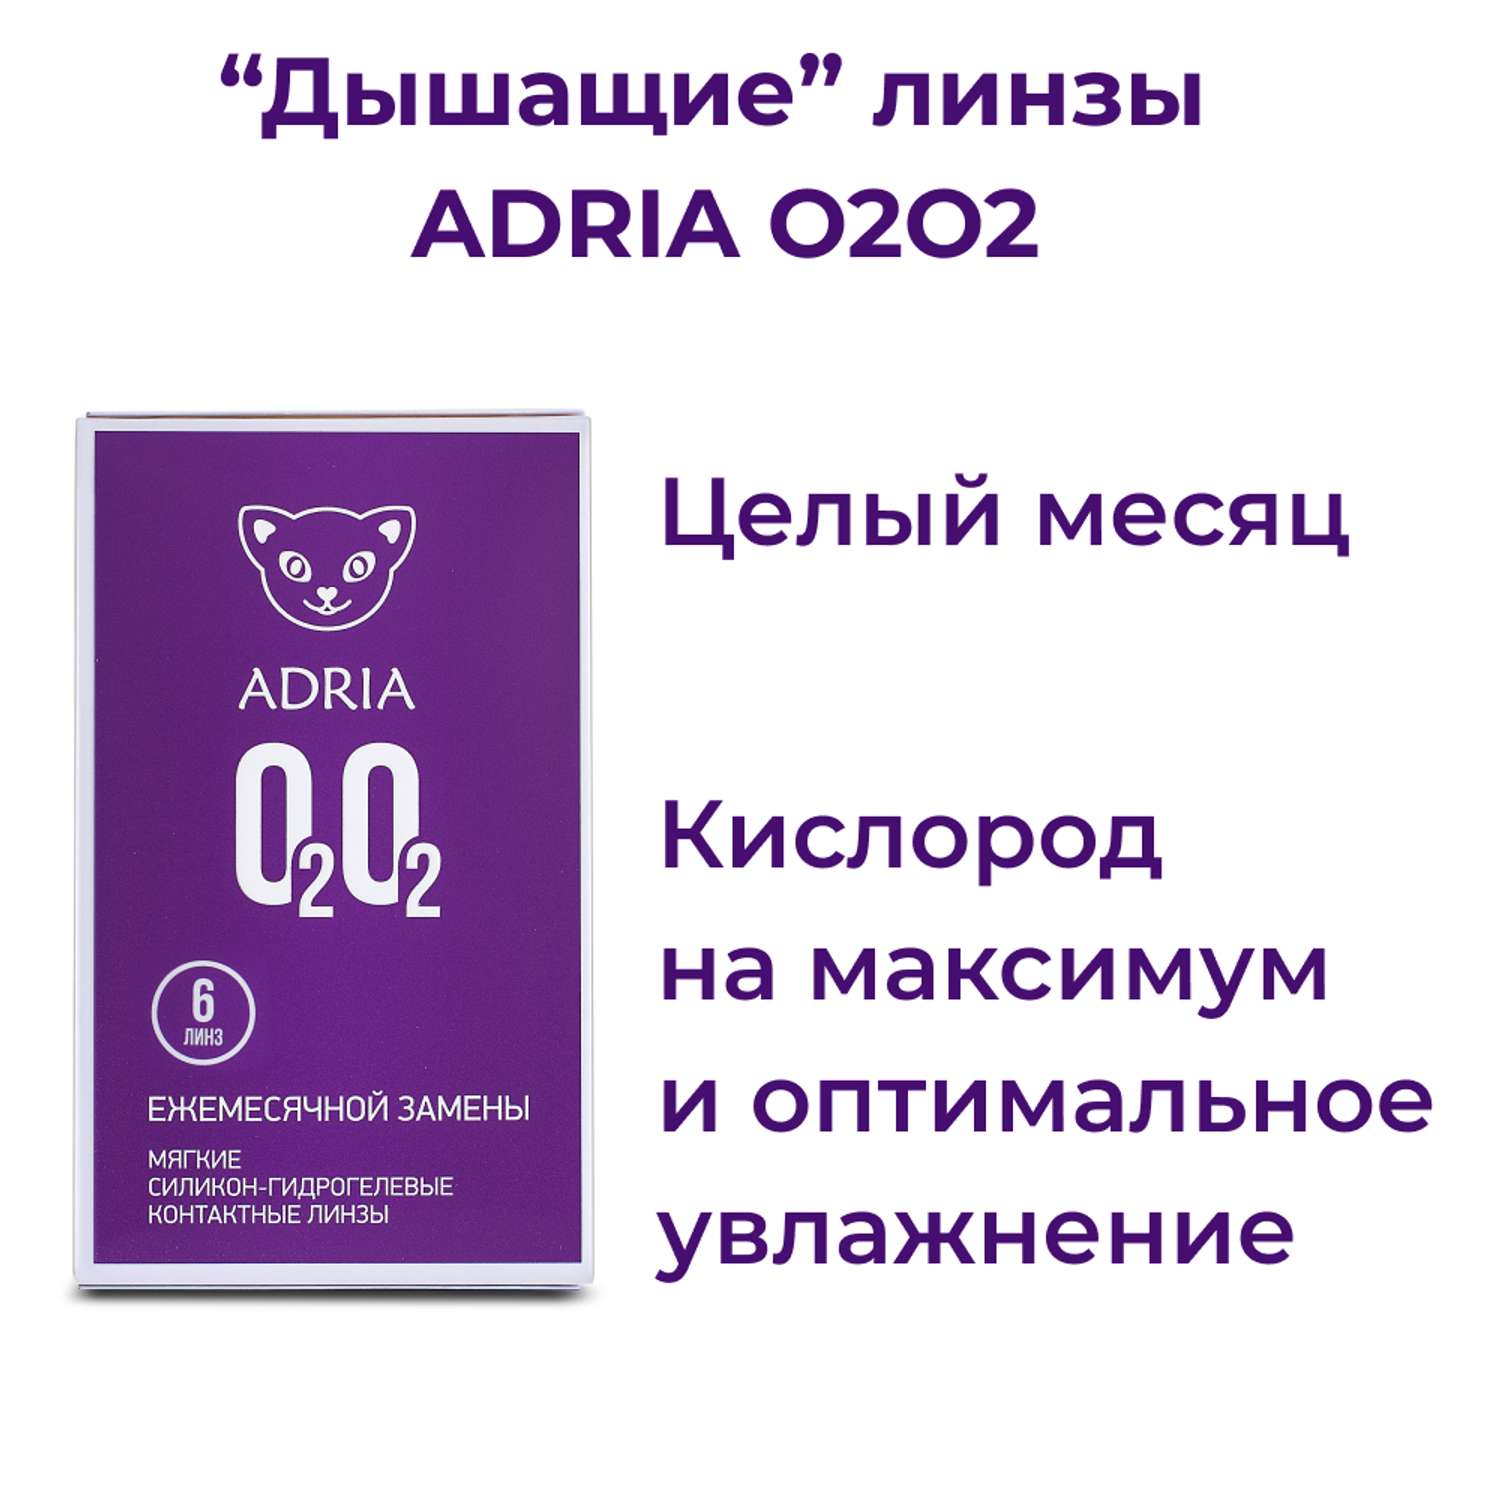 Контактные линзы ADRIA O2O2 6 линз R 8.6 -4.00 - фото 2